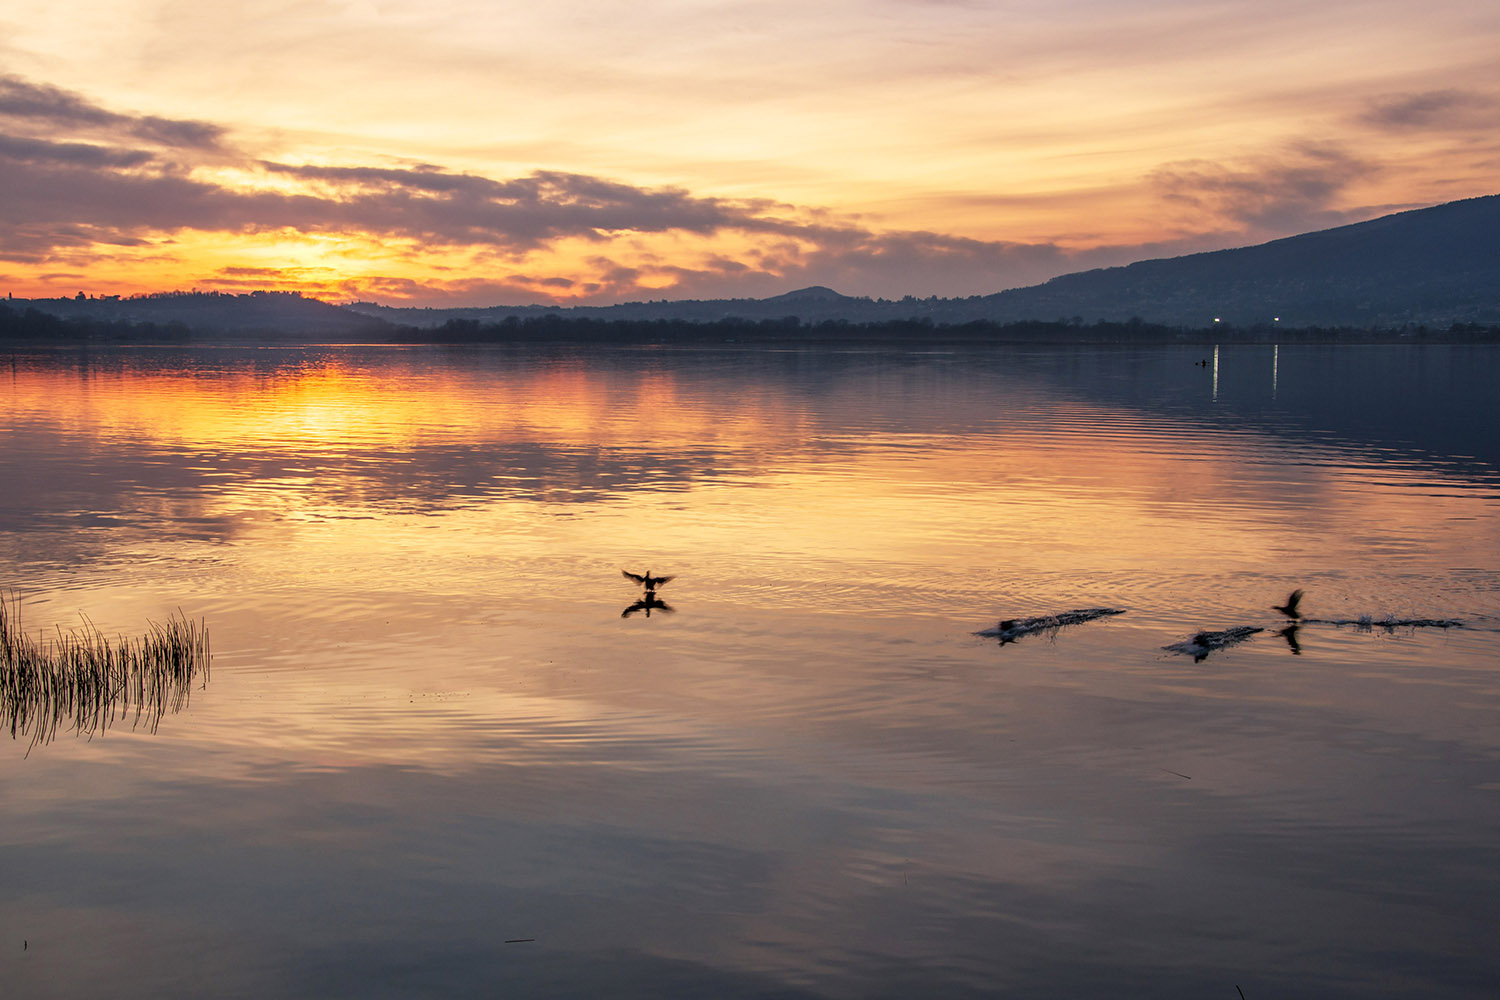 tramonto sul lago di Pusiano...